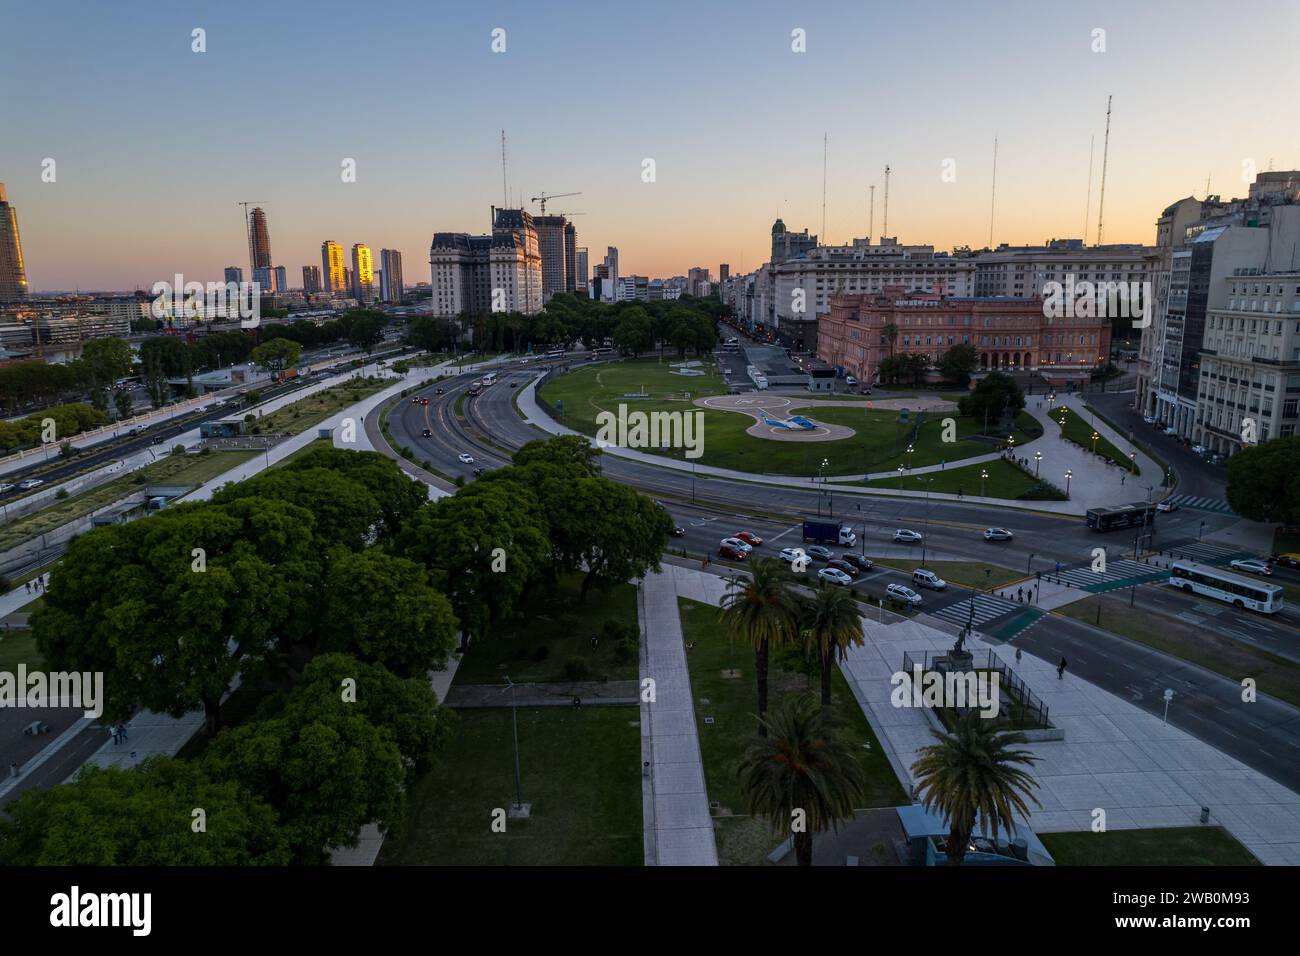 Belles images aériennes de la Plaza de Mayo, de la maison des présidents Casa Rosada, du Centre culturel Kirchner, à Puerto Madero. Buenos Aires, Argentine Banque D'Images